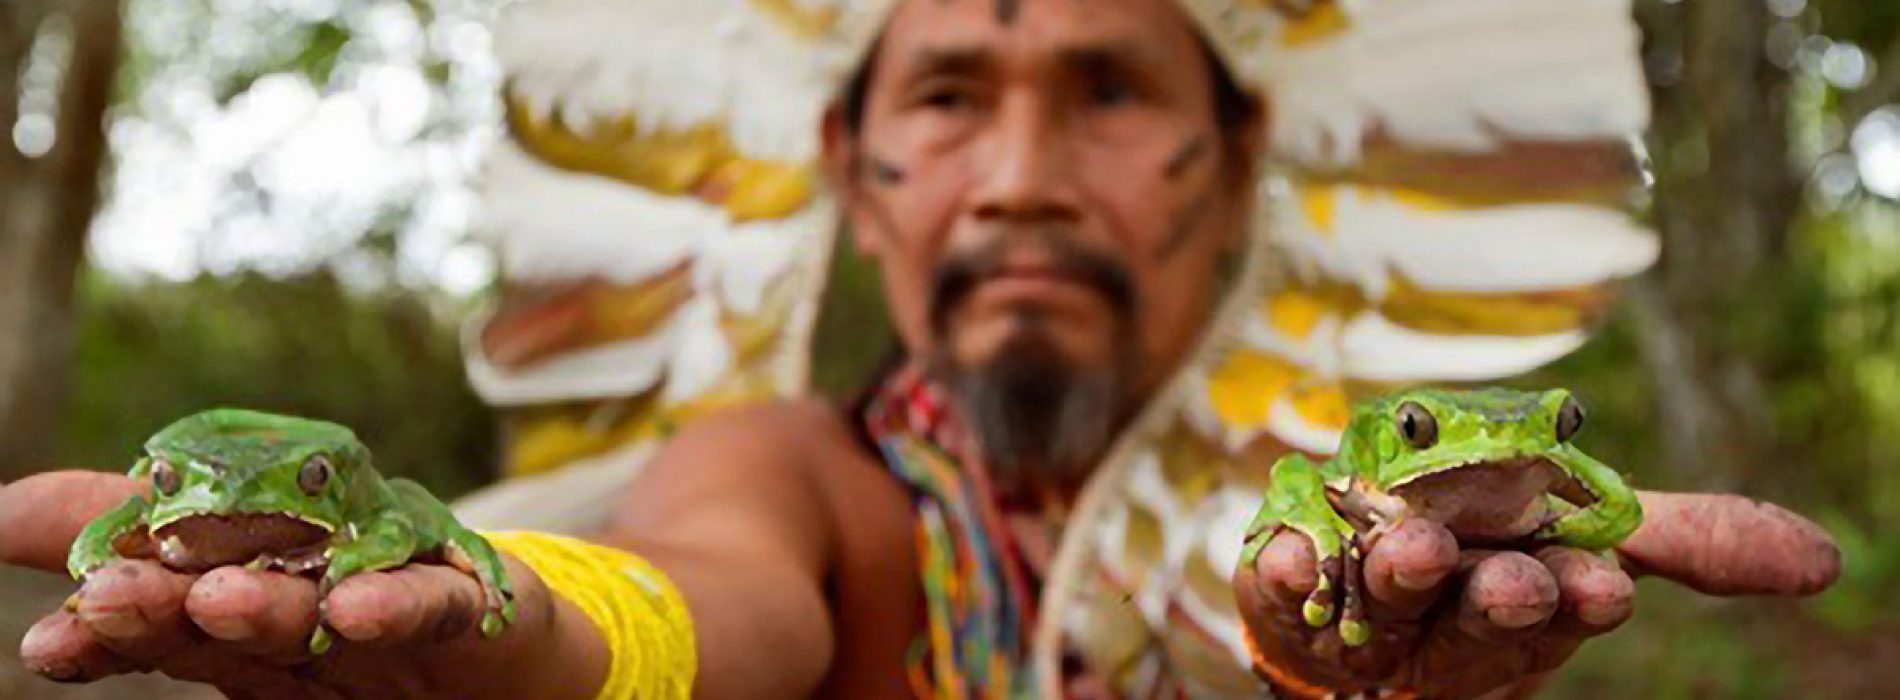 Kambô – wondermedicijn uit de Amazone